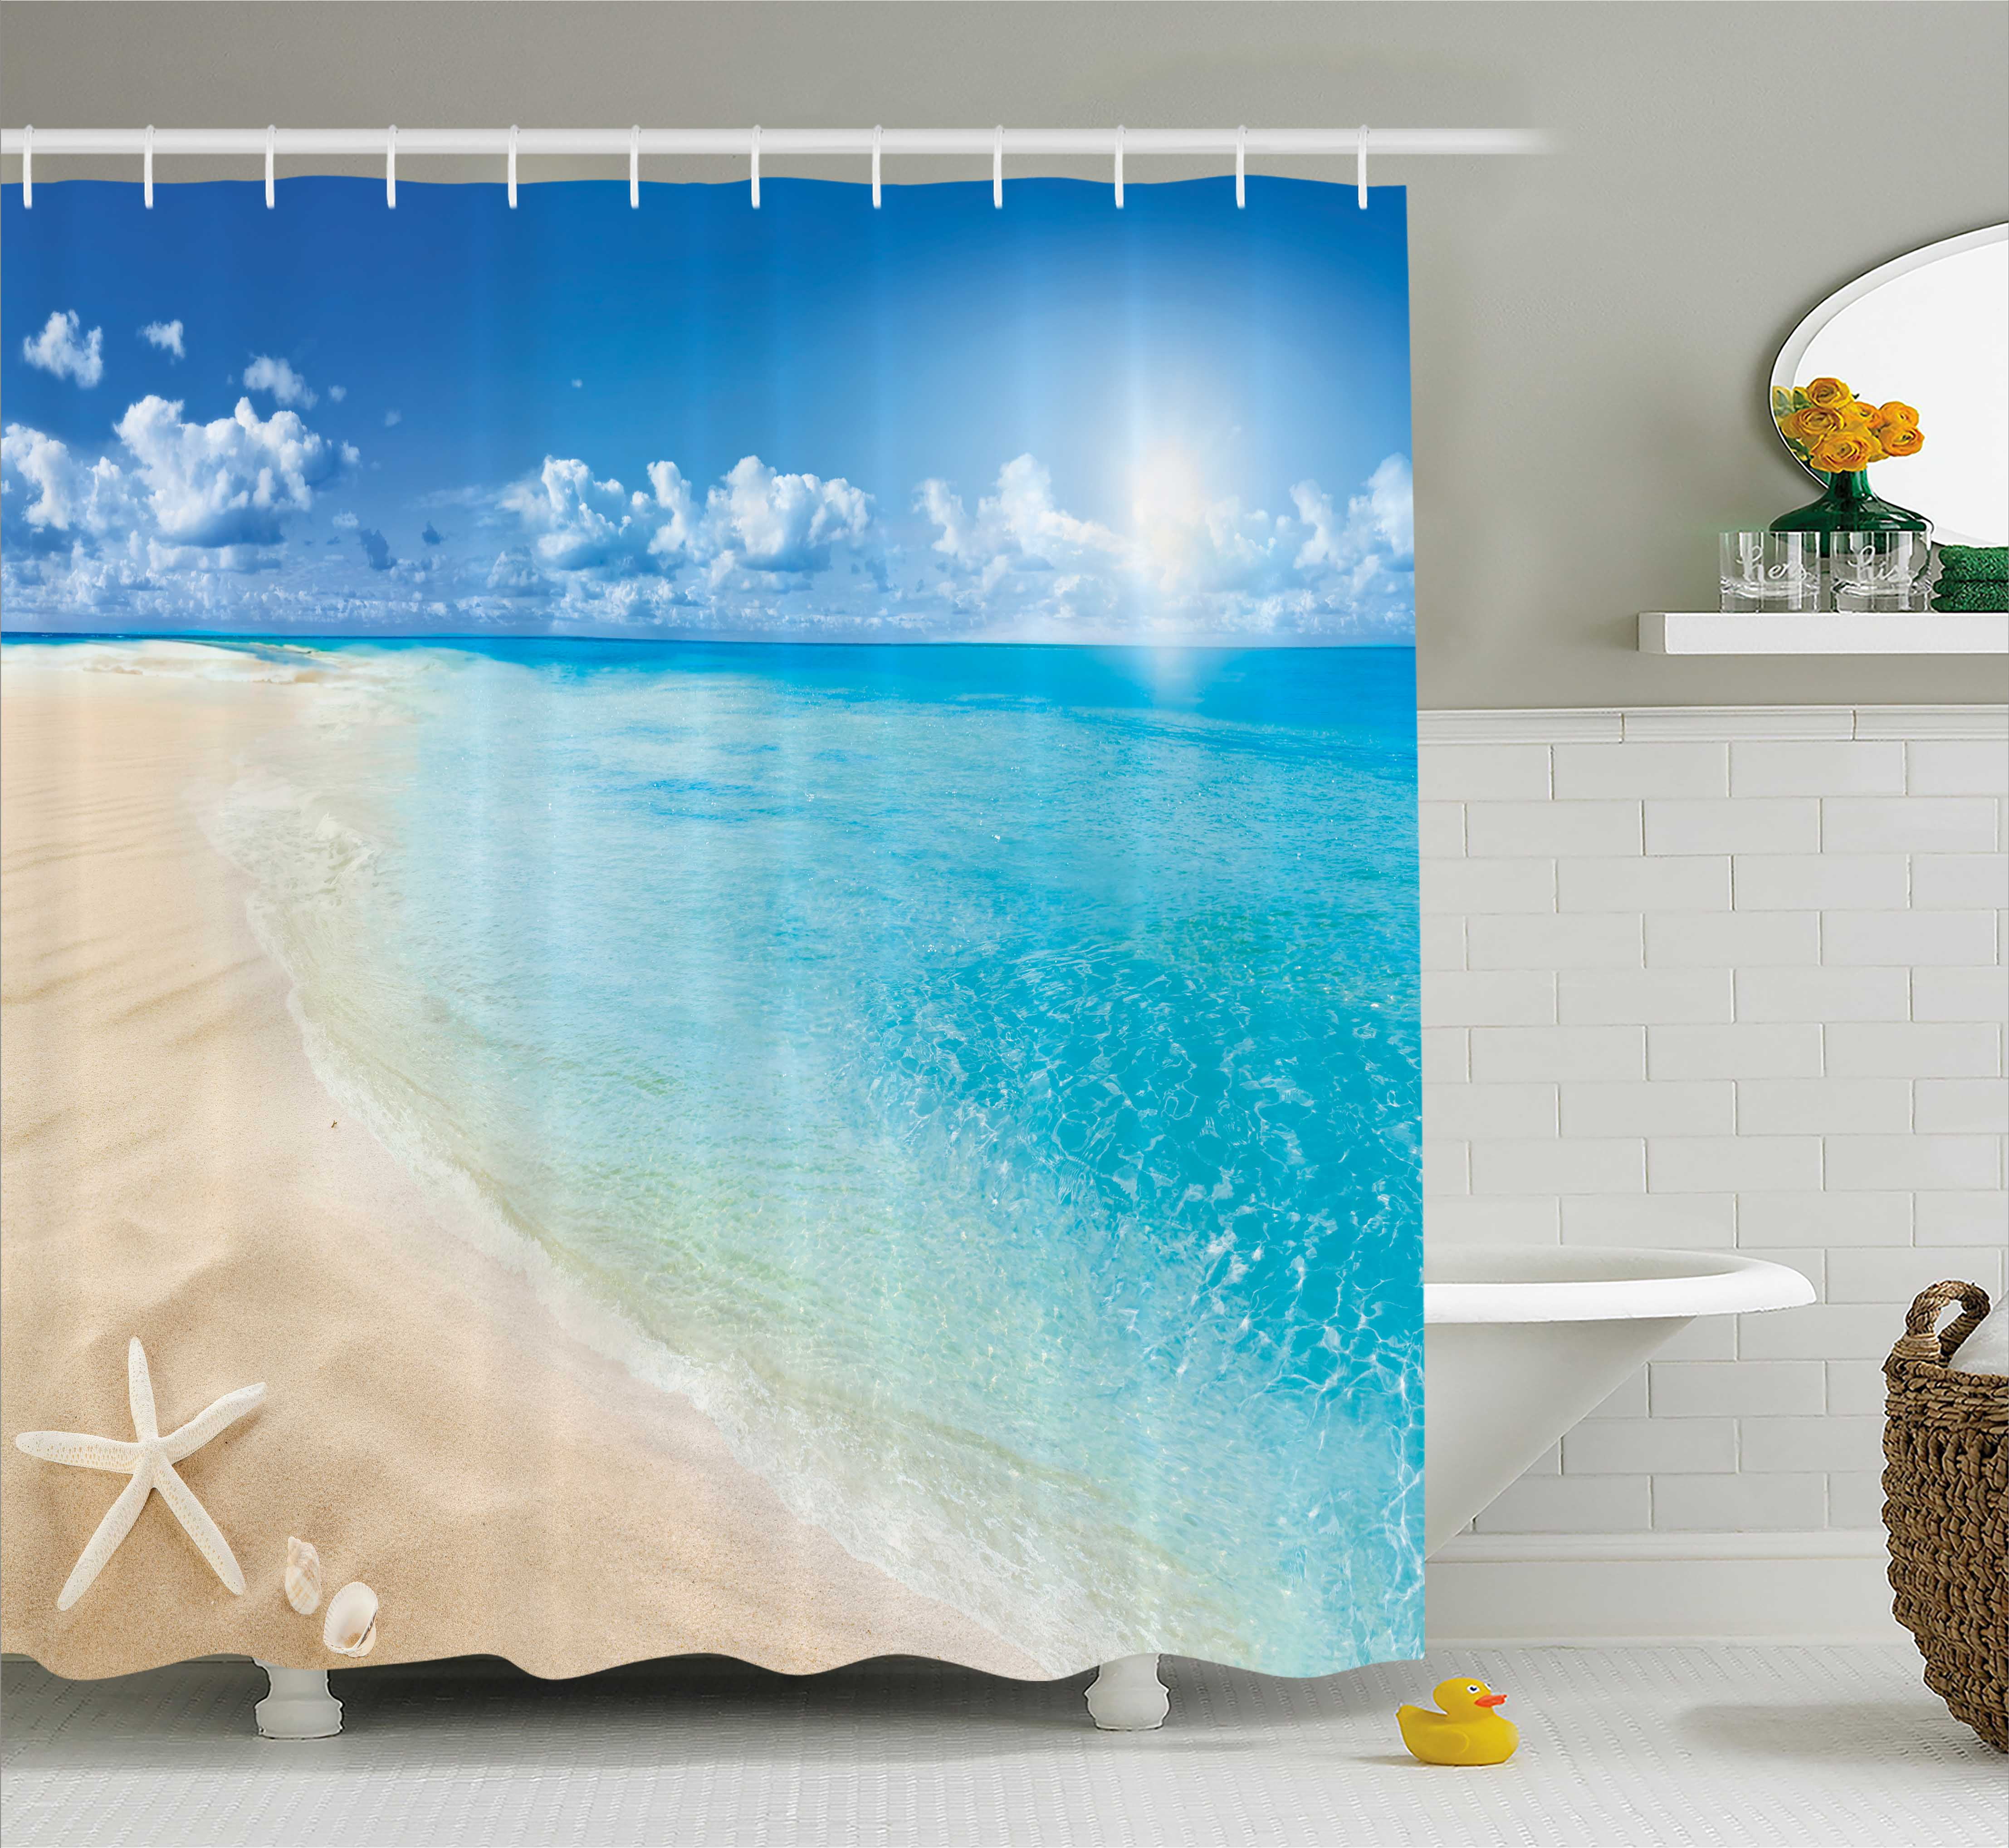 Beach shower curtain